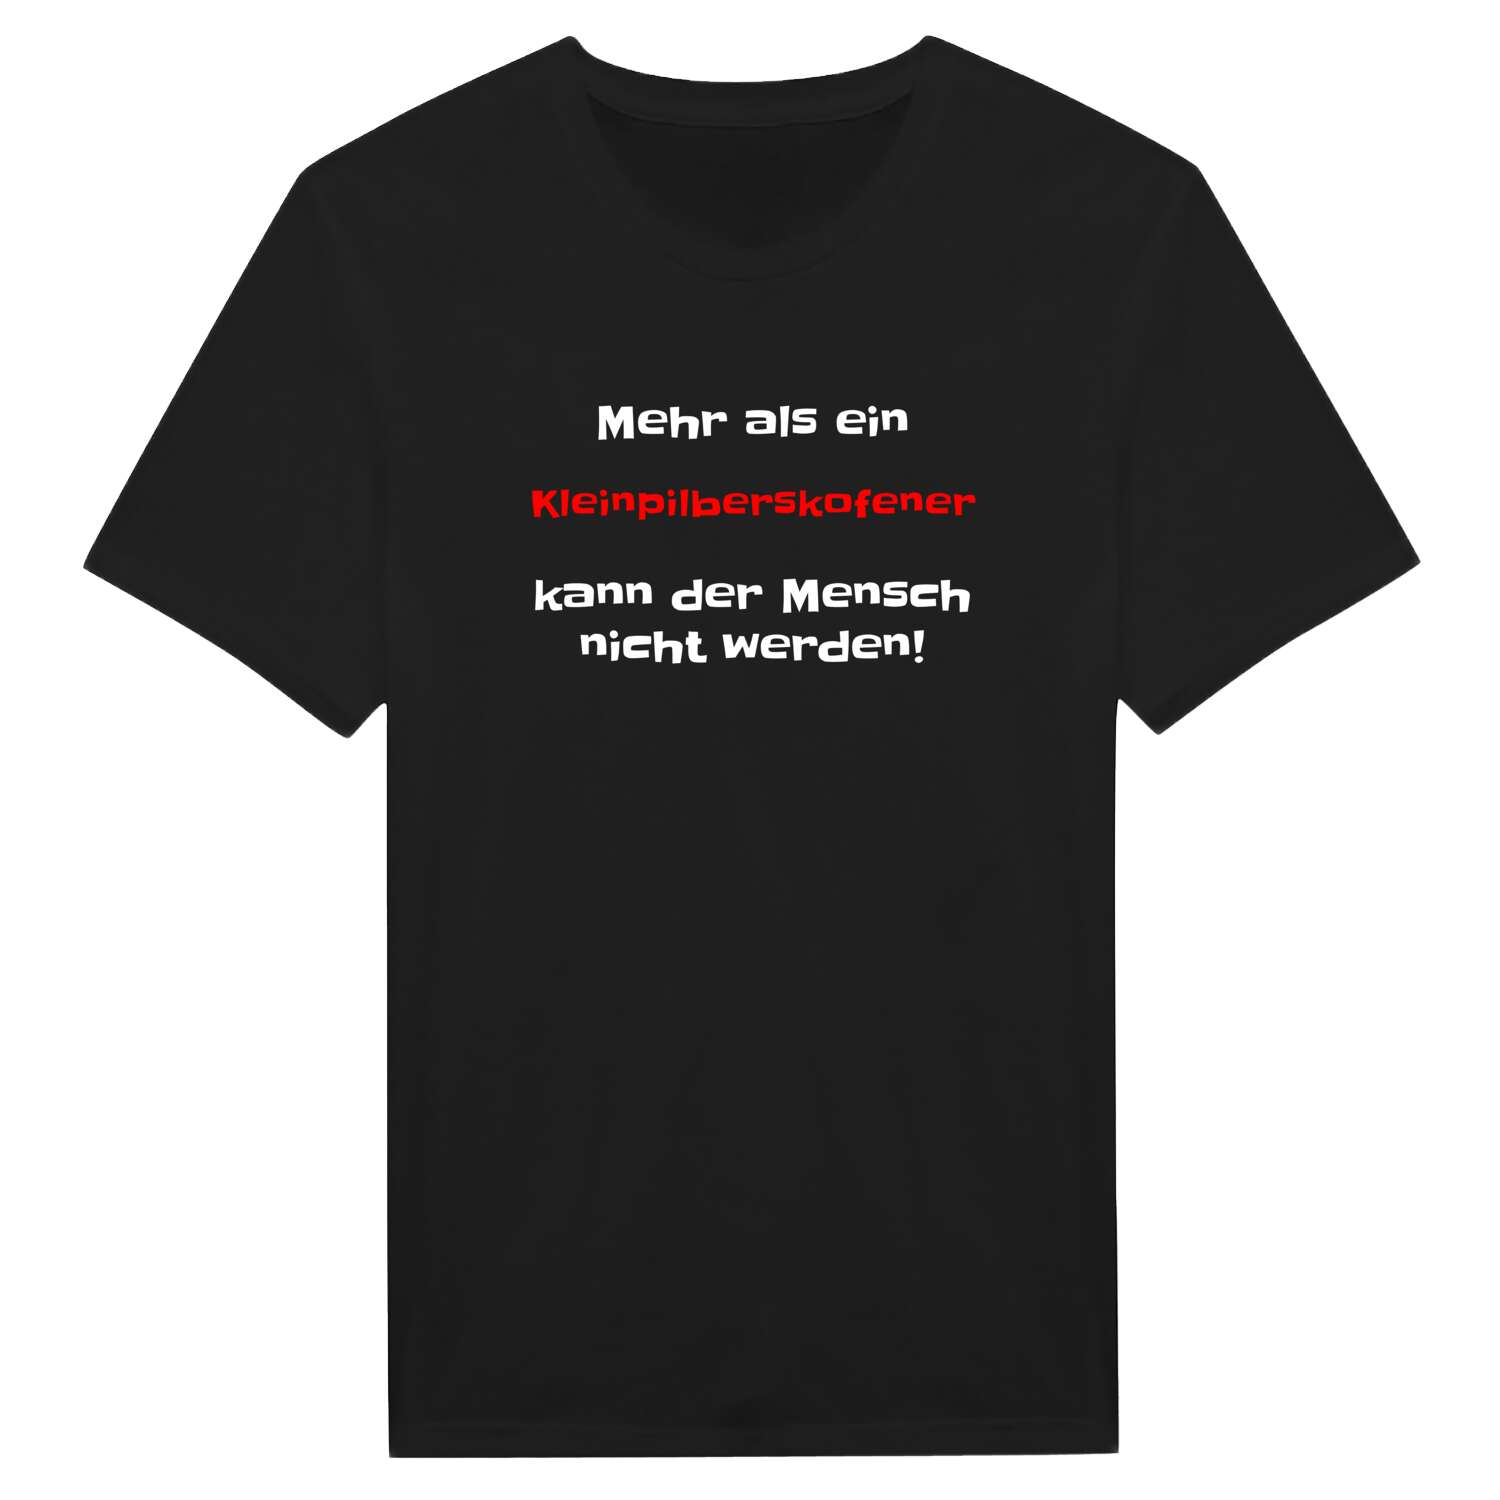 Kleinpilberskofen T-Shirt »Mehr als ein«